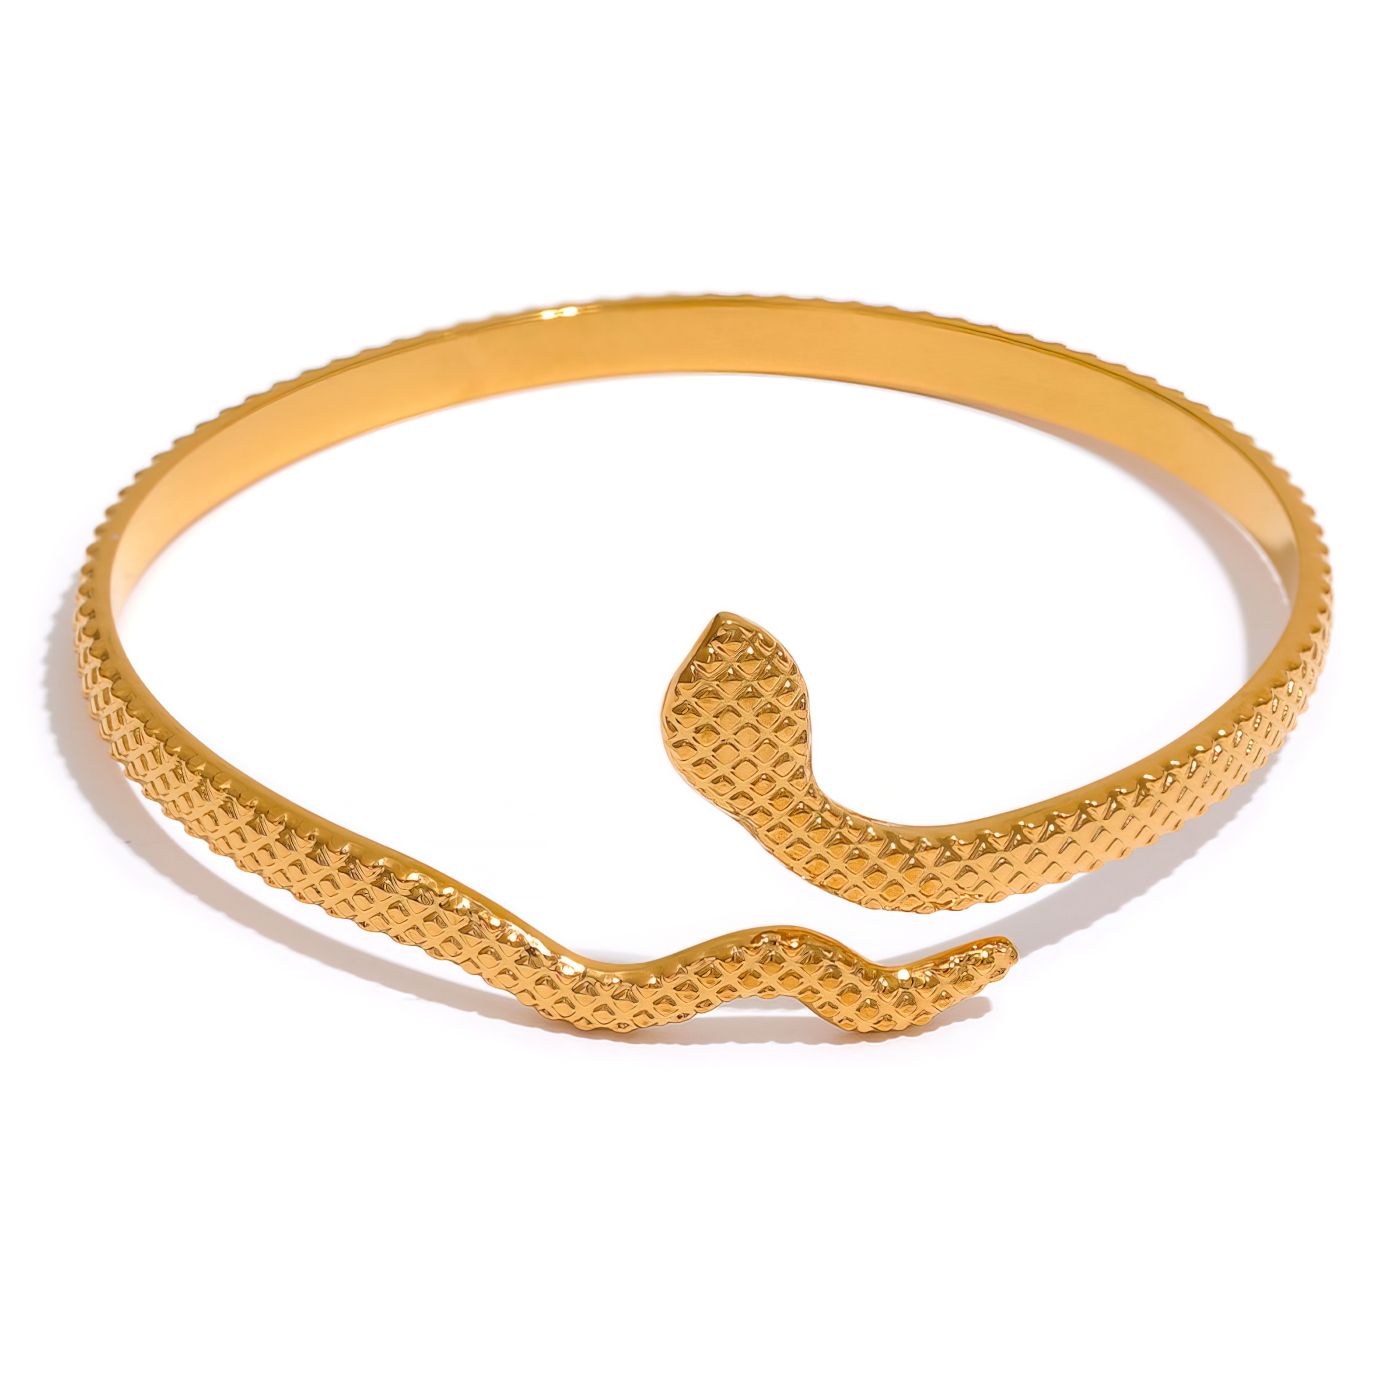 Bracelete Serpente Banhado a Ouro 18k - Aspekto 2